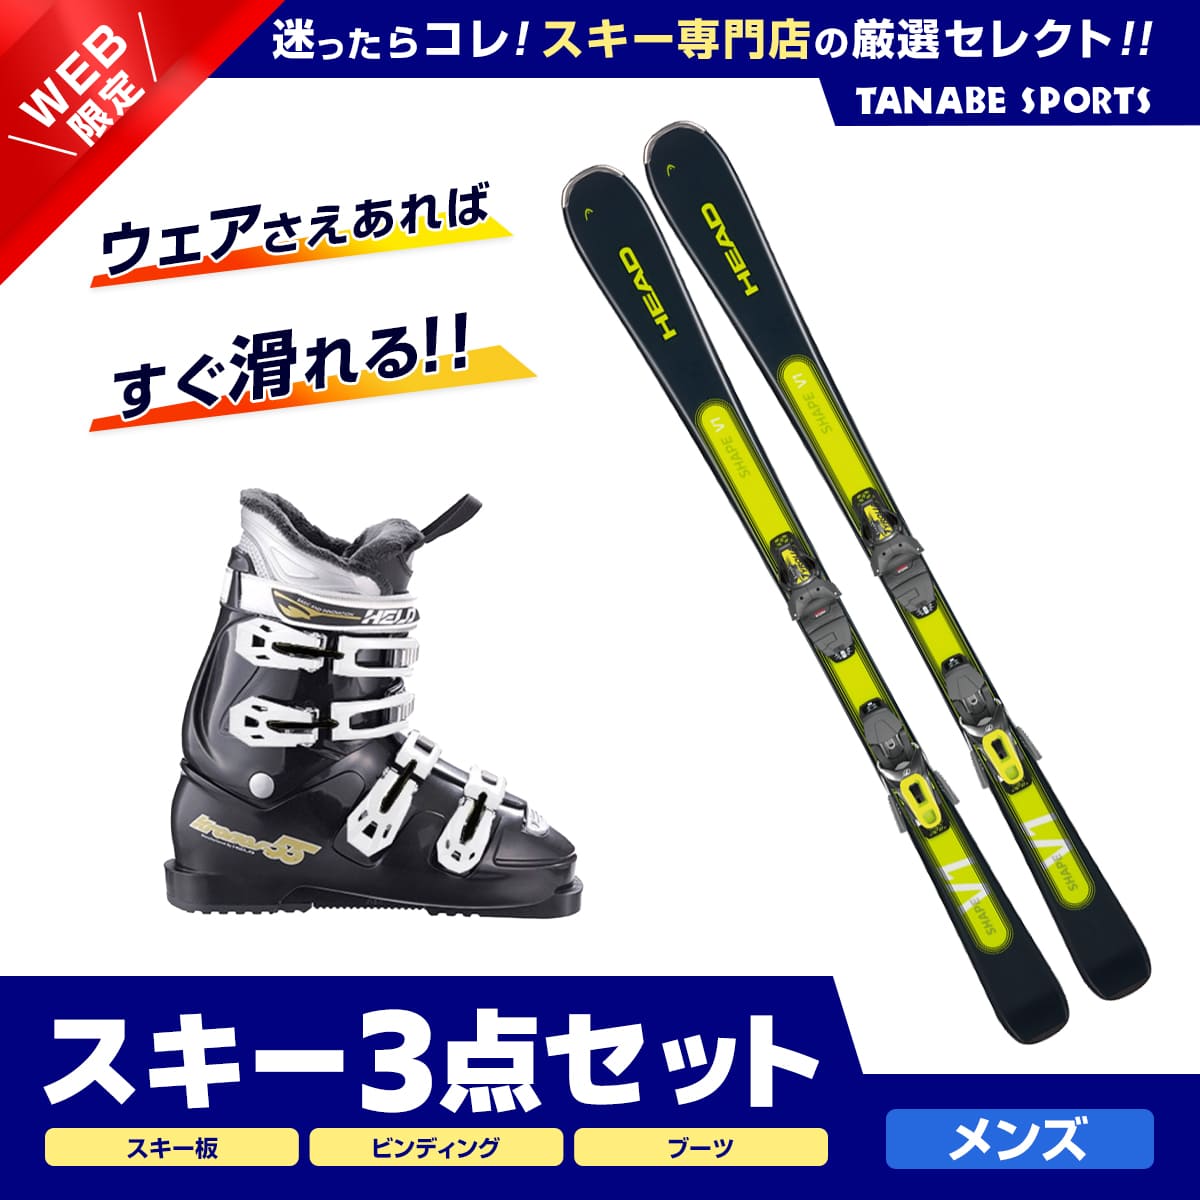 スキー板(HEAD ERA3.0)163cm とブーツ29.0cm おまけ付き - ブーツ(男性用)